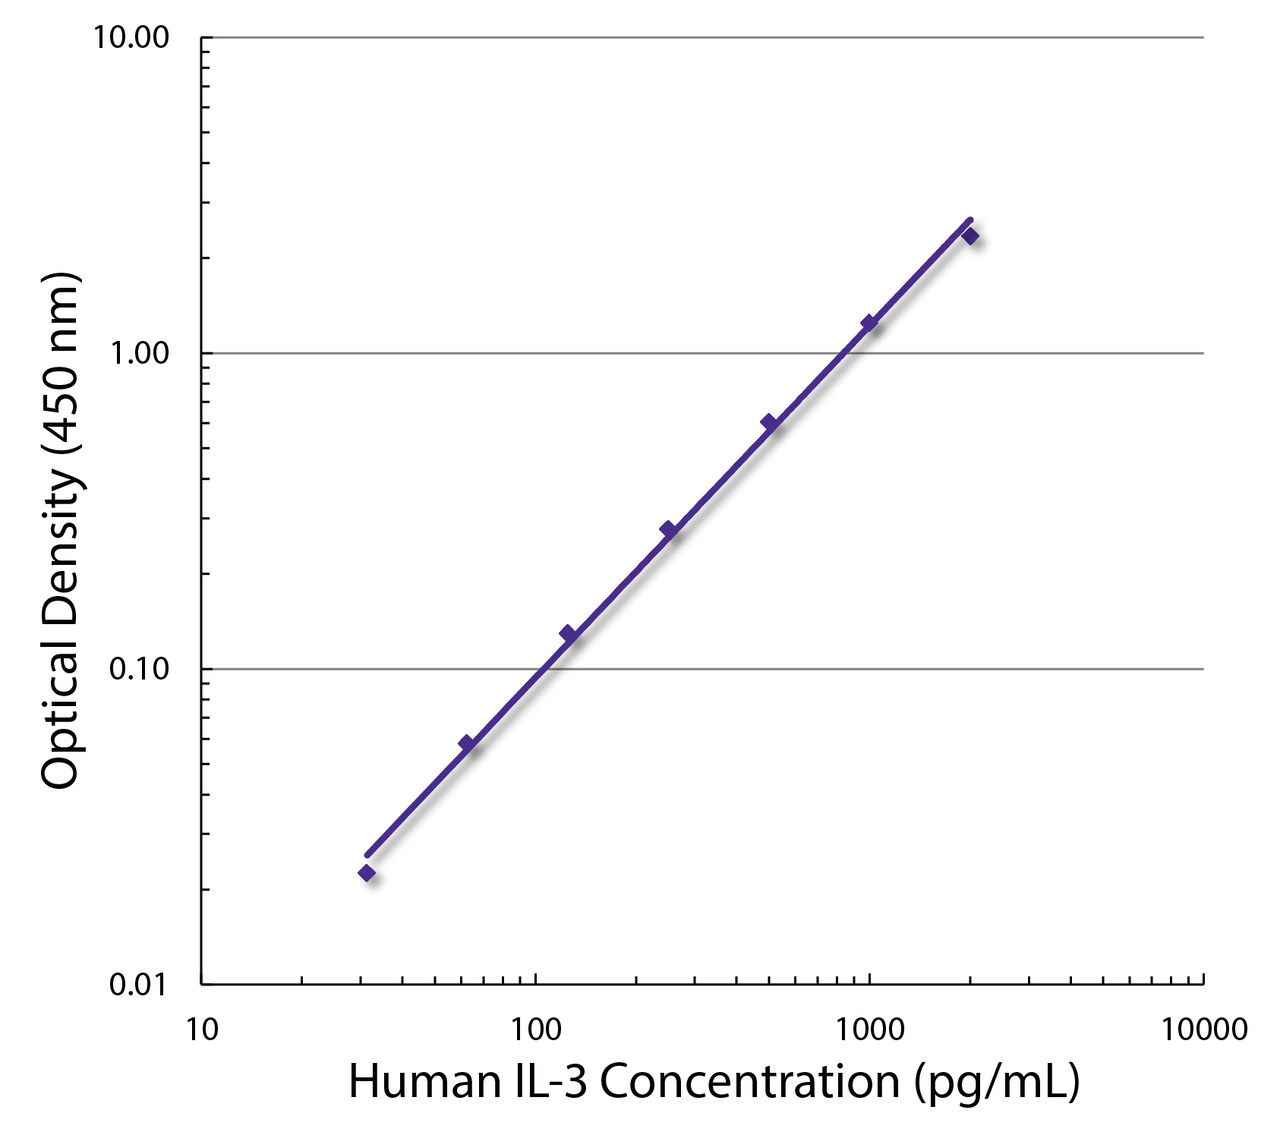 Standard curve generated with Rat Anti-Human IL-3-UNLB (Cat. No. 10115-01; Clone BVD8-3G11) and Rat Anti-Human IL-3-BIOT (Cat. No. 99-652; Clone BVD3-1F9) followed by Streptavidin-HRP